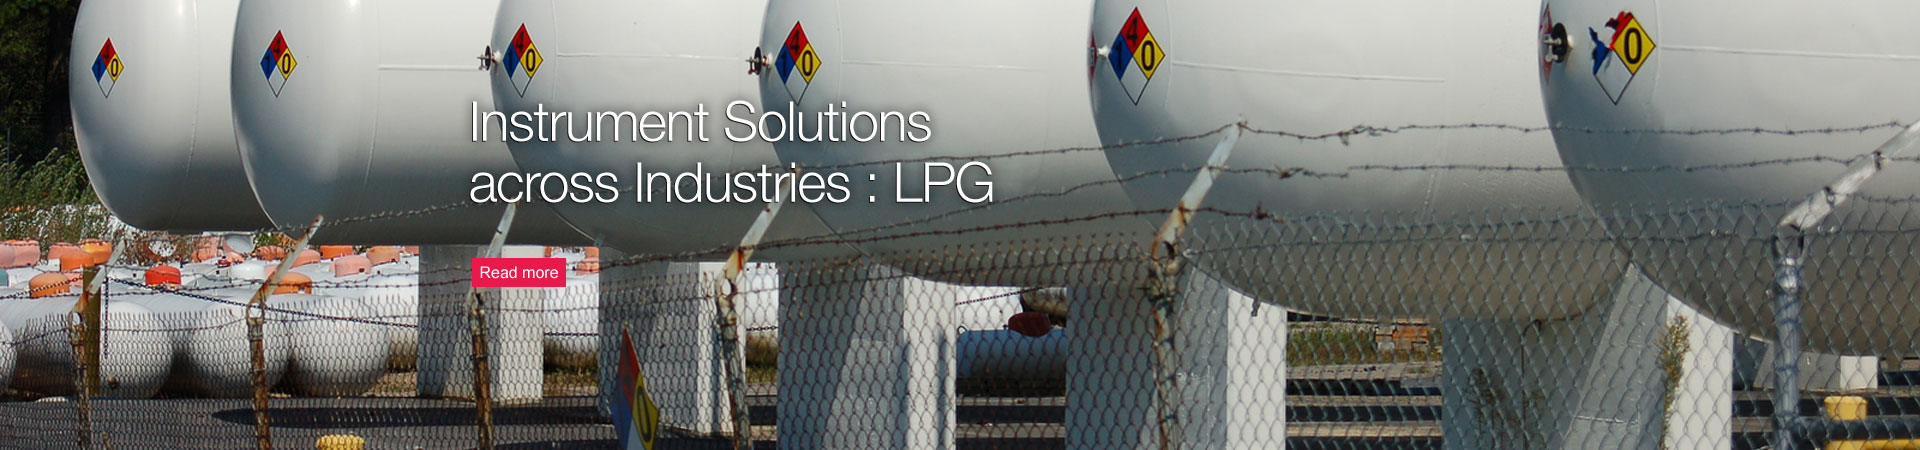 Instrument Solutions across Industries : LPG